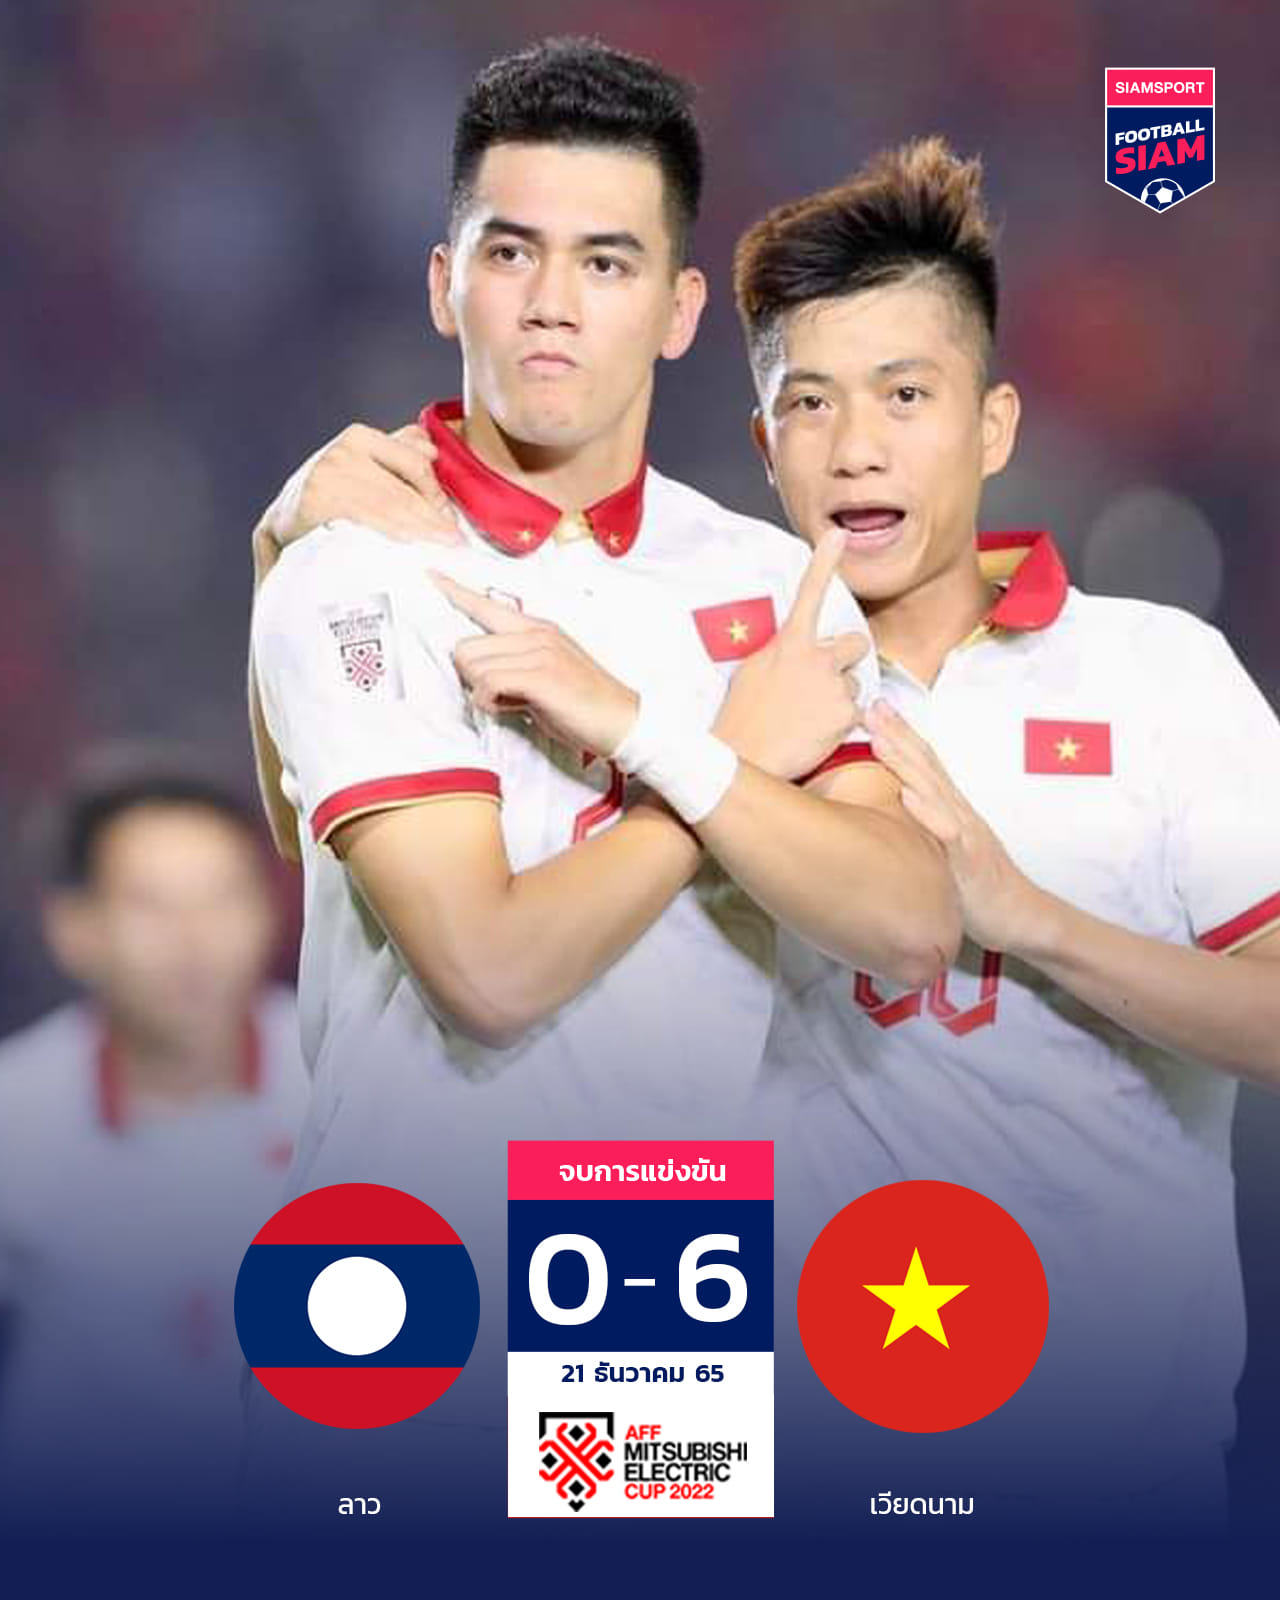 ĐT Việt nam giành chiến thắng 6-0 trong trận đầu ra quân tại AFF Cup 2022 ngày 21/12. Ảnh: Siam Sport